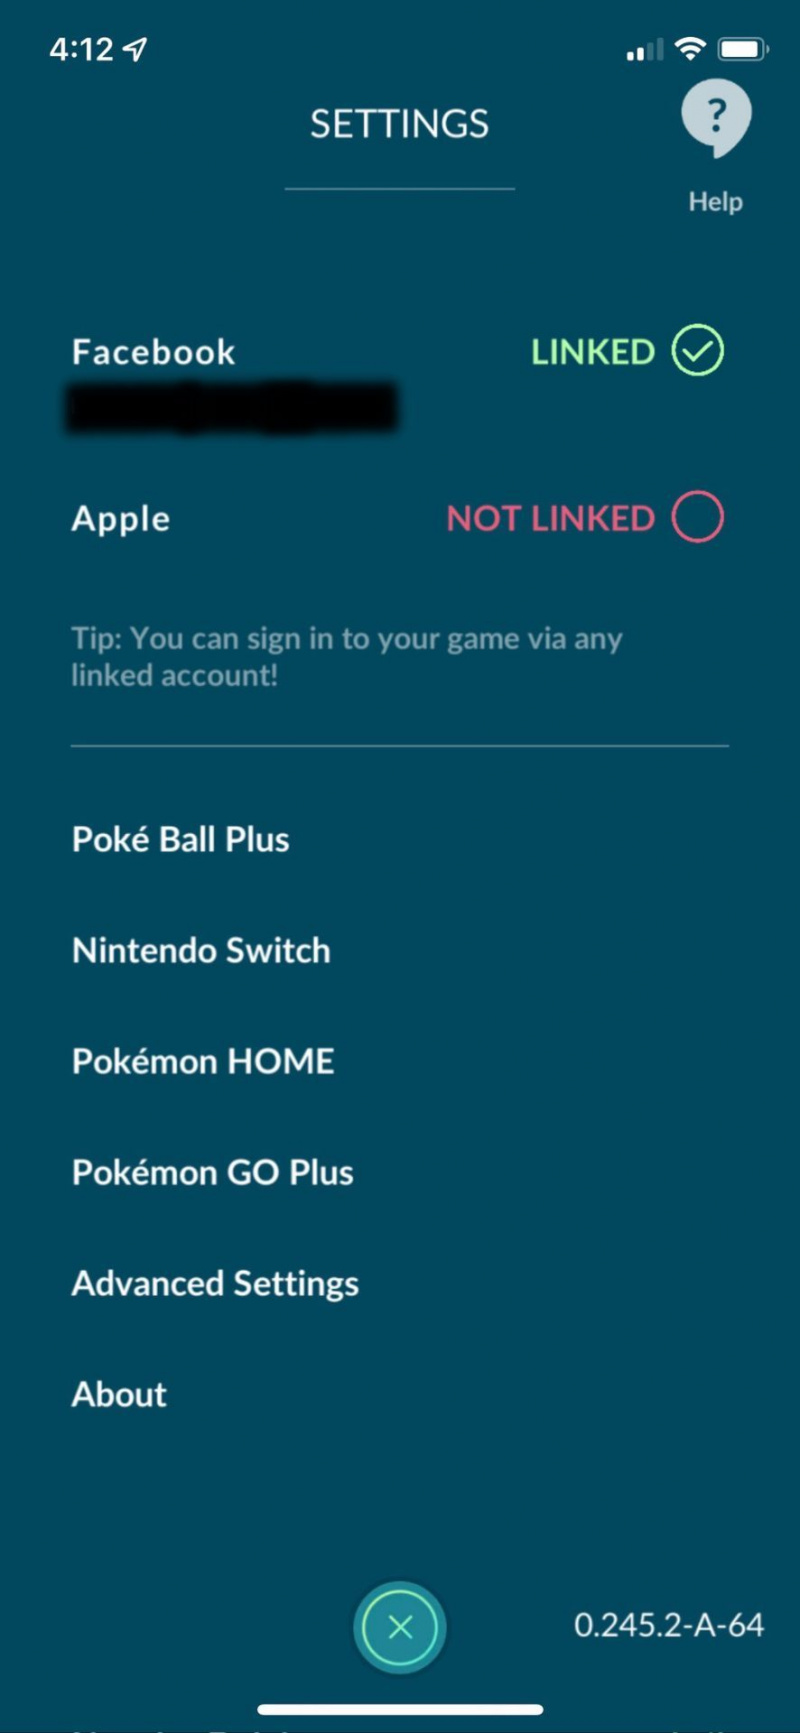   Kako povezati Poke ball plus s pokemon go open poke ball plus